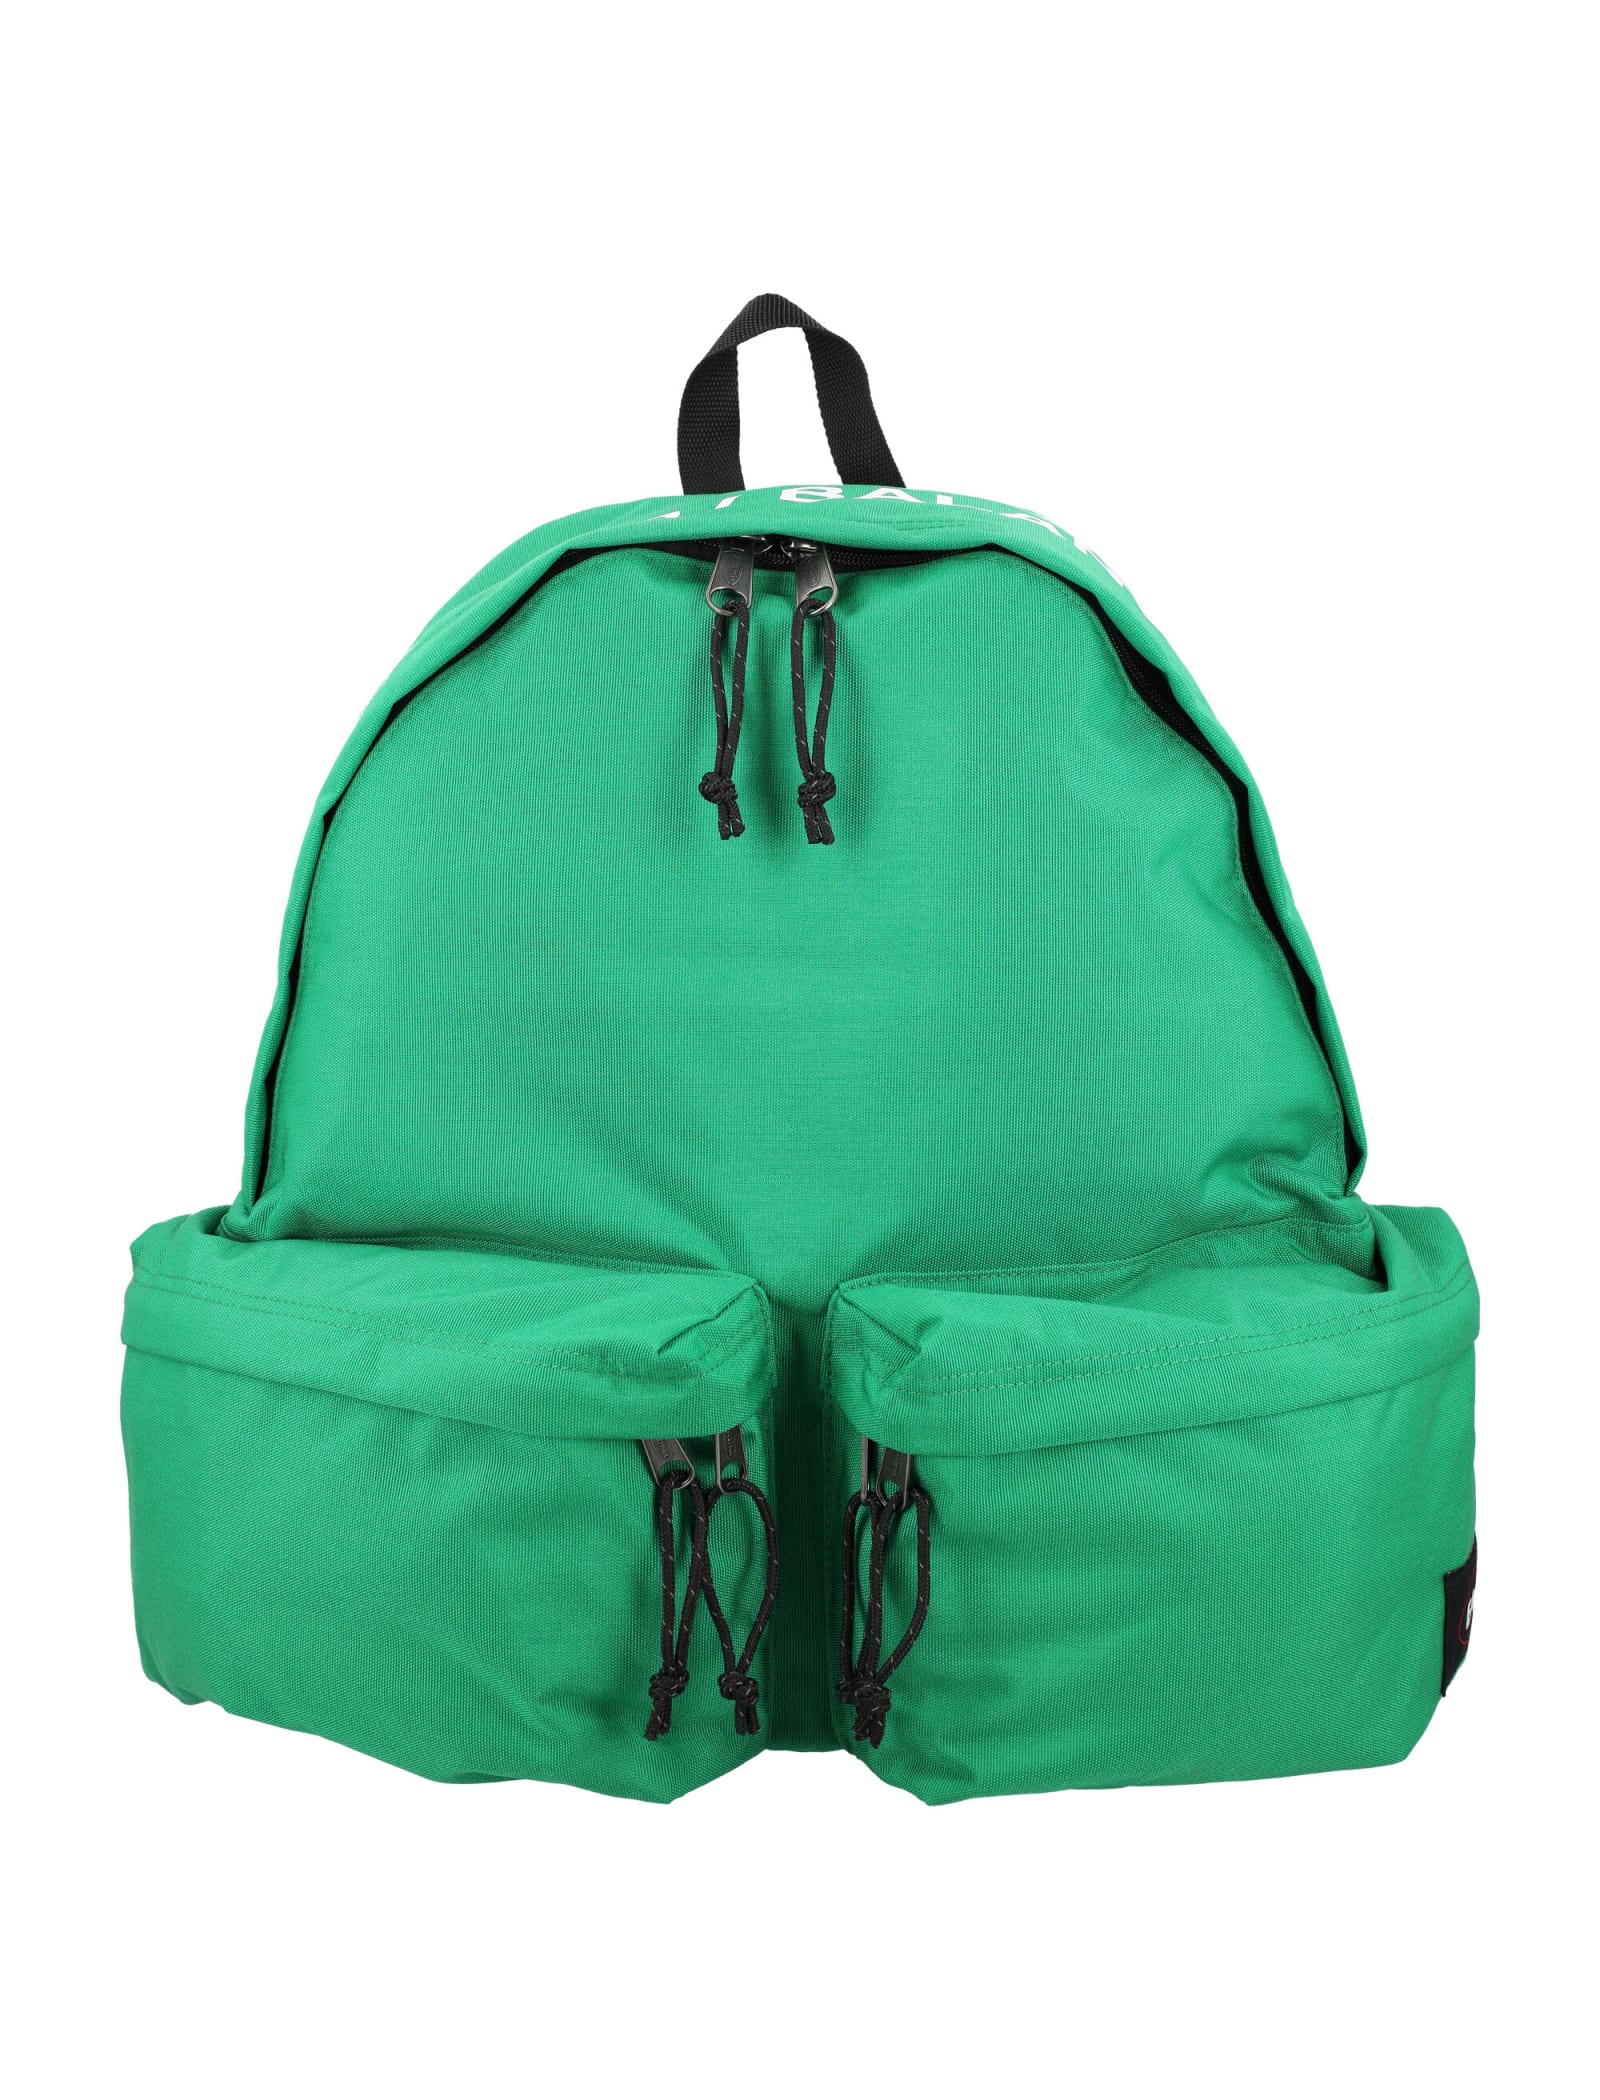 Eastpak Undercover Double Pocket Backpack